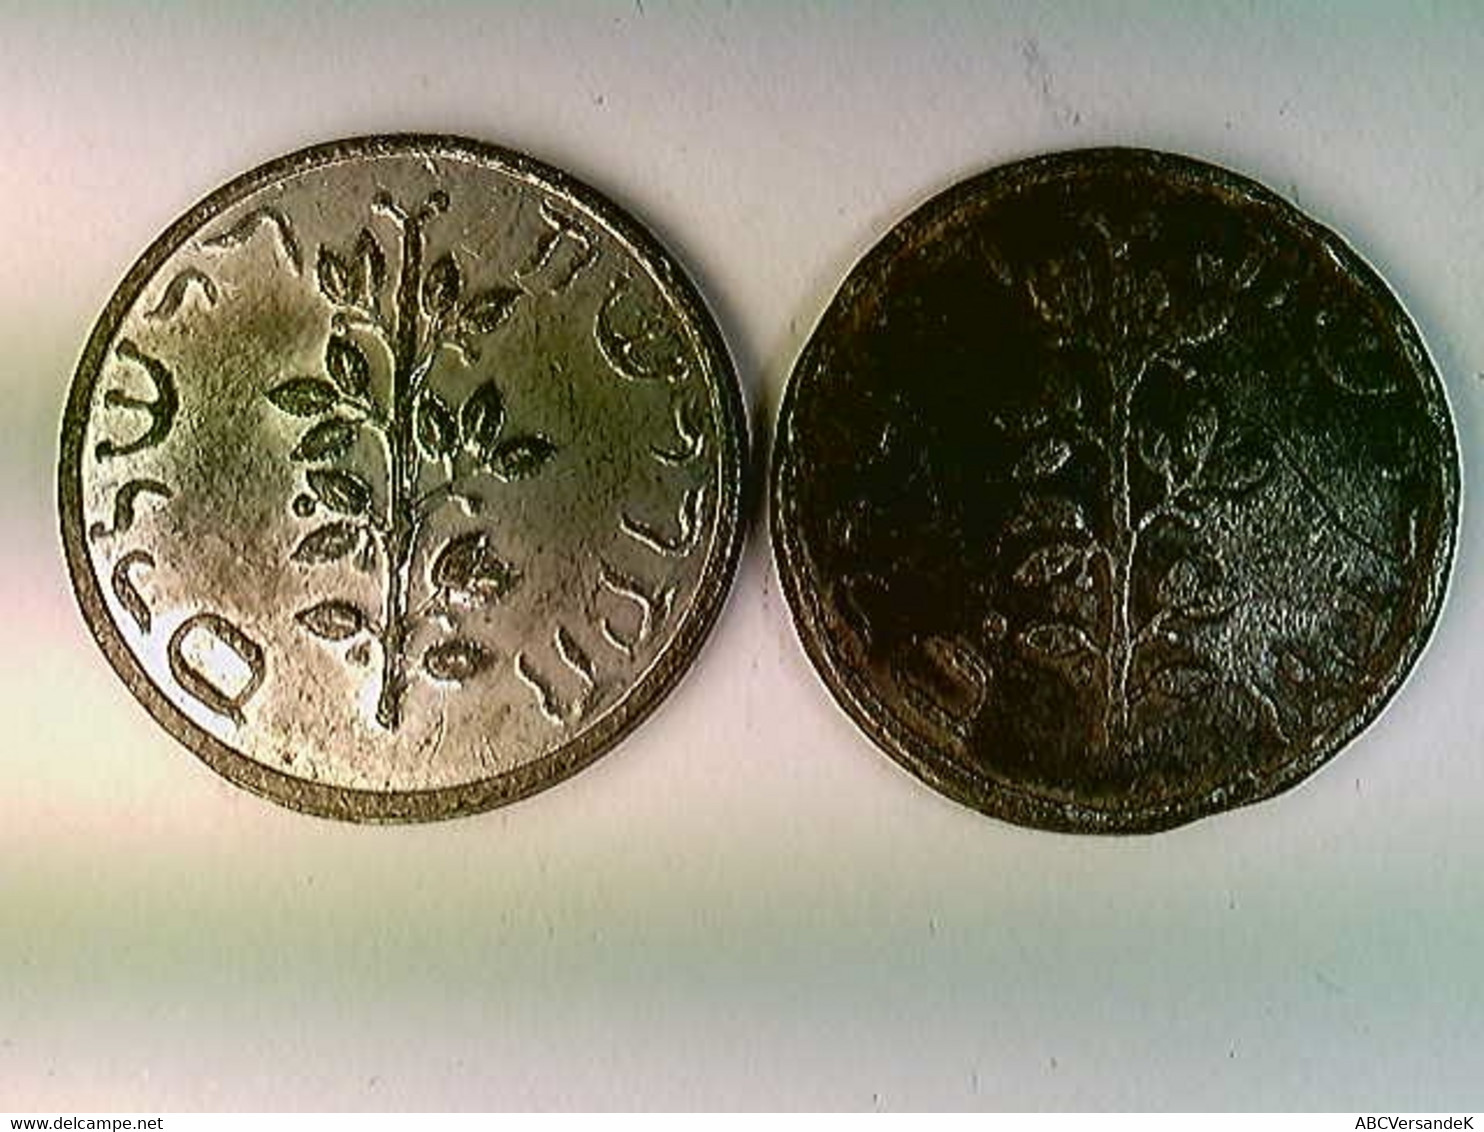 Münzen, 2x Görlitzer Schekel, 19. Jahrh., Judaika, Amphore, Weihrauch, Olivenzweig, Konvolut - Numismatique